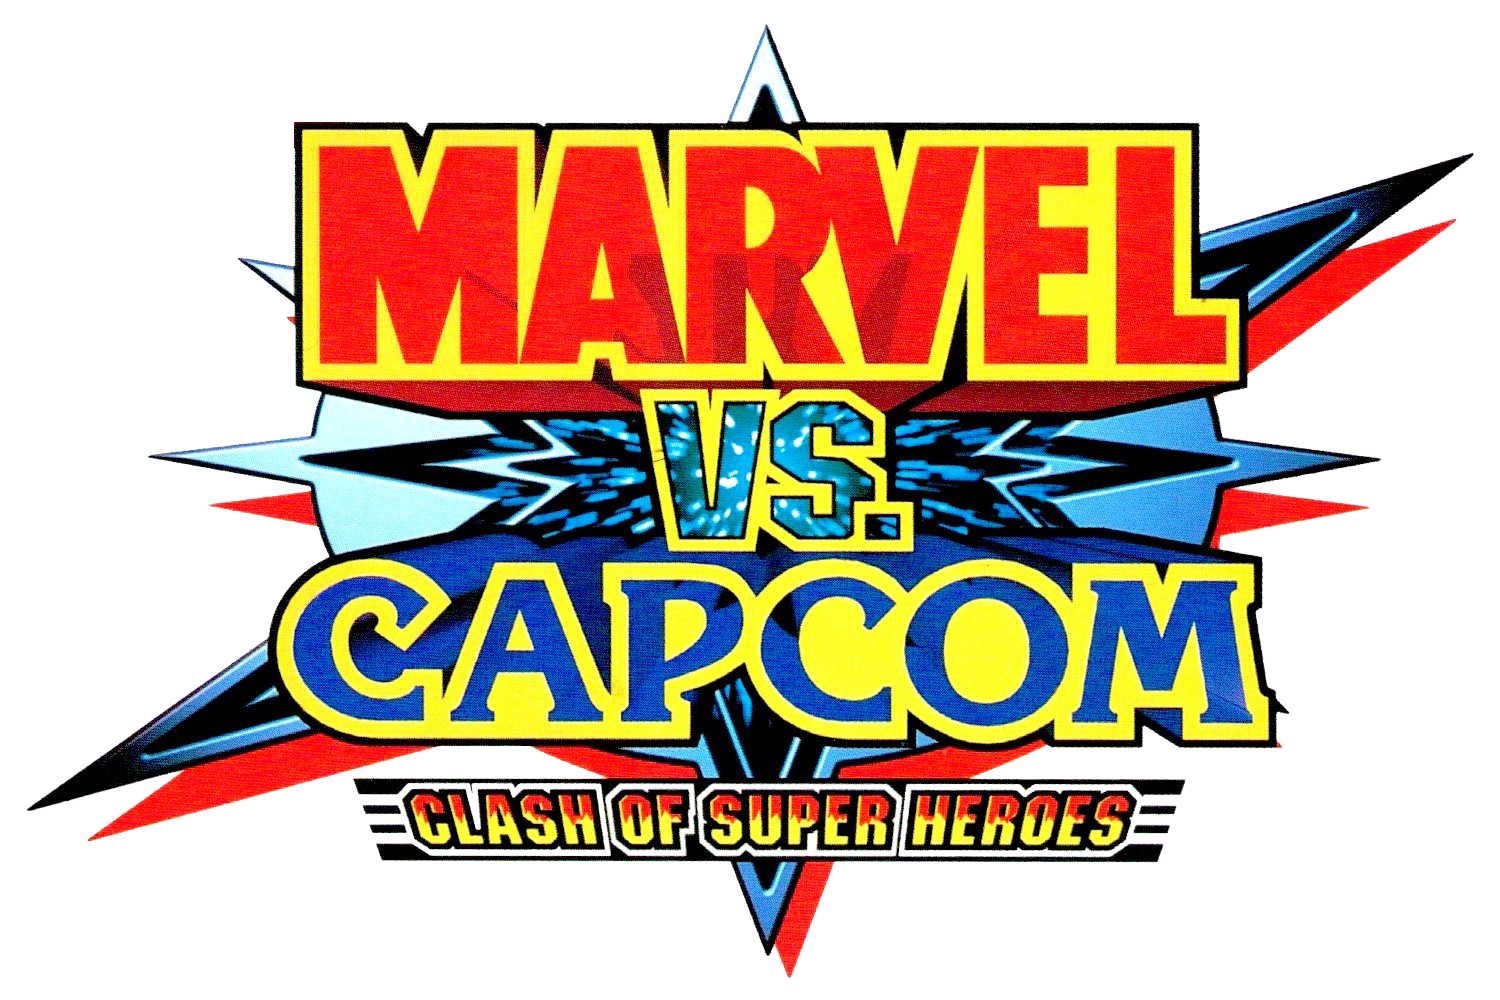 Marvel Super Heroes vs. Street Fighter, Marvel vs. Capcom Wiki